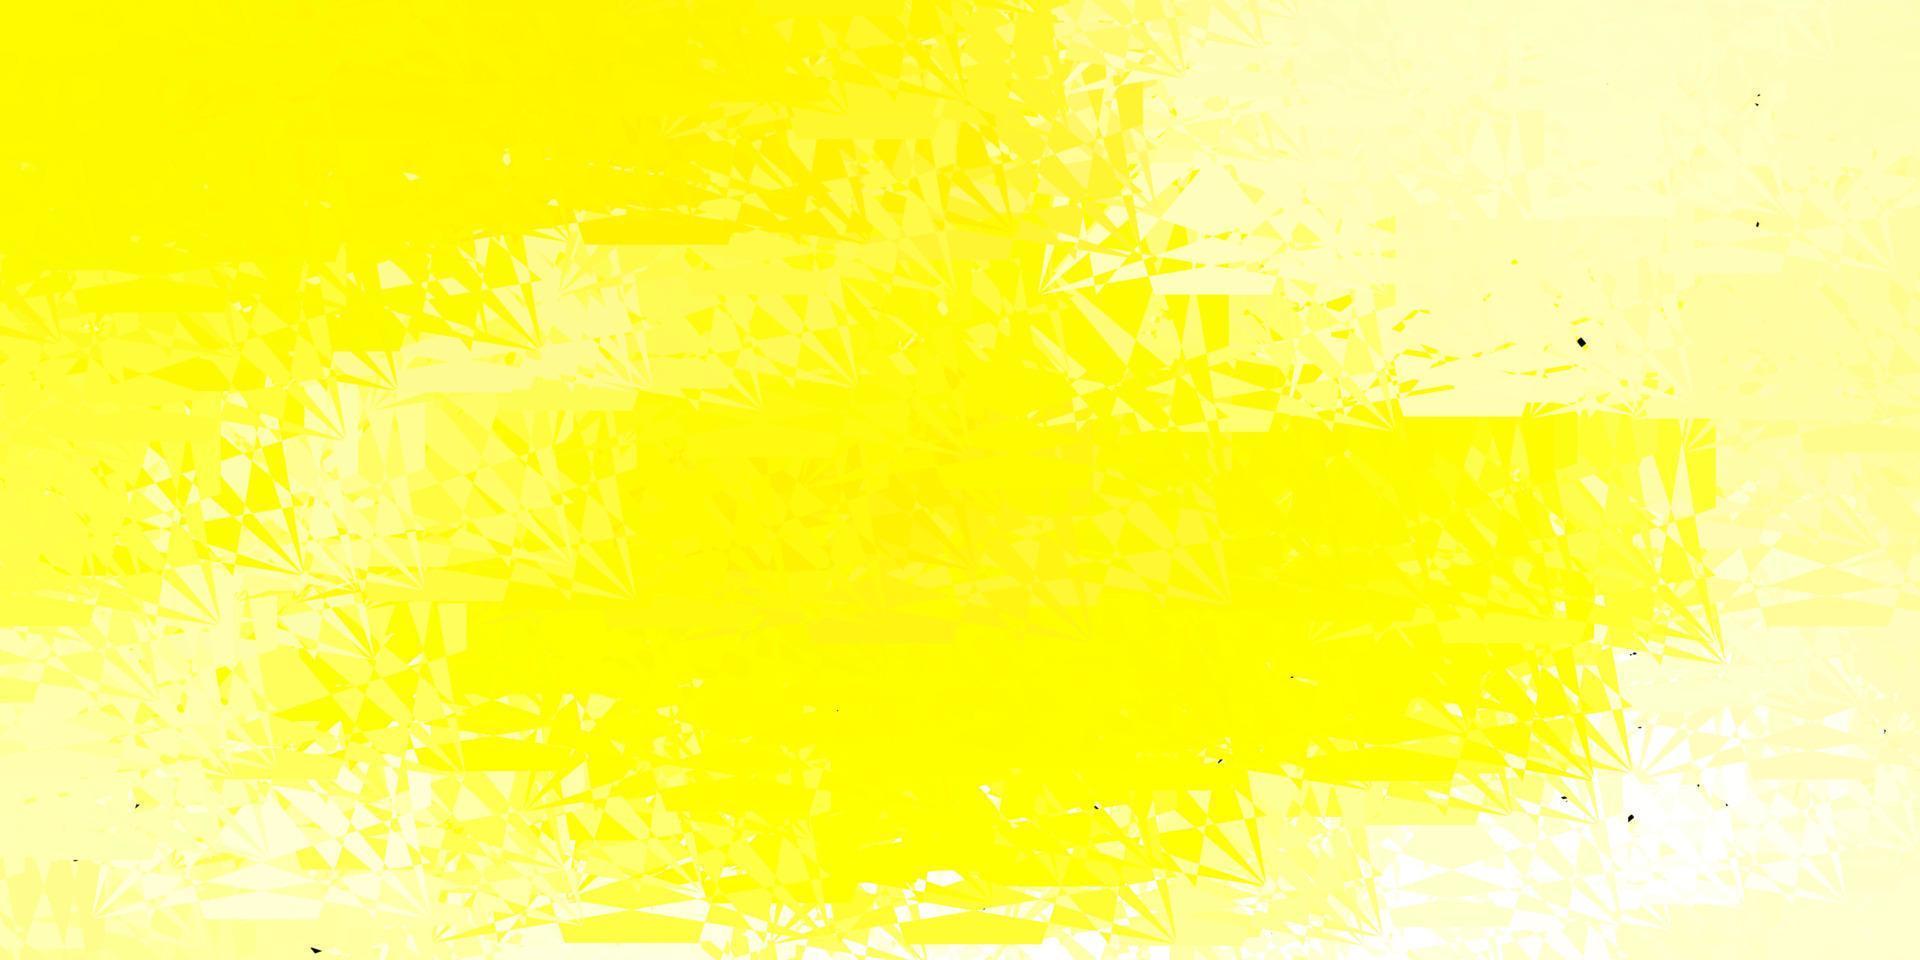 Fondo de vector amarillo claro con formas poligonales.